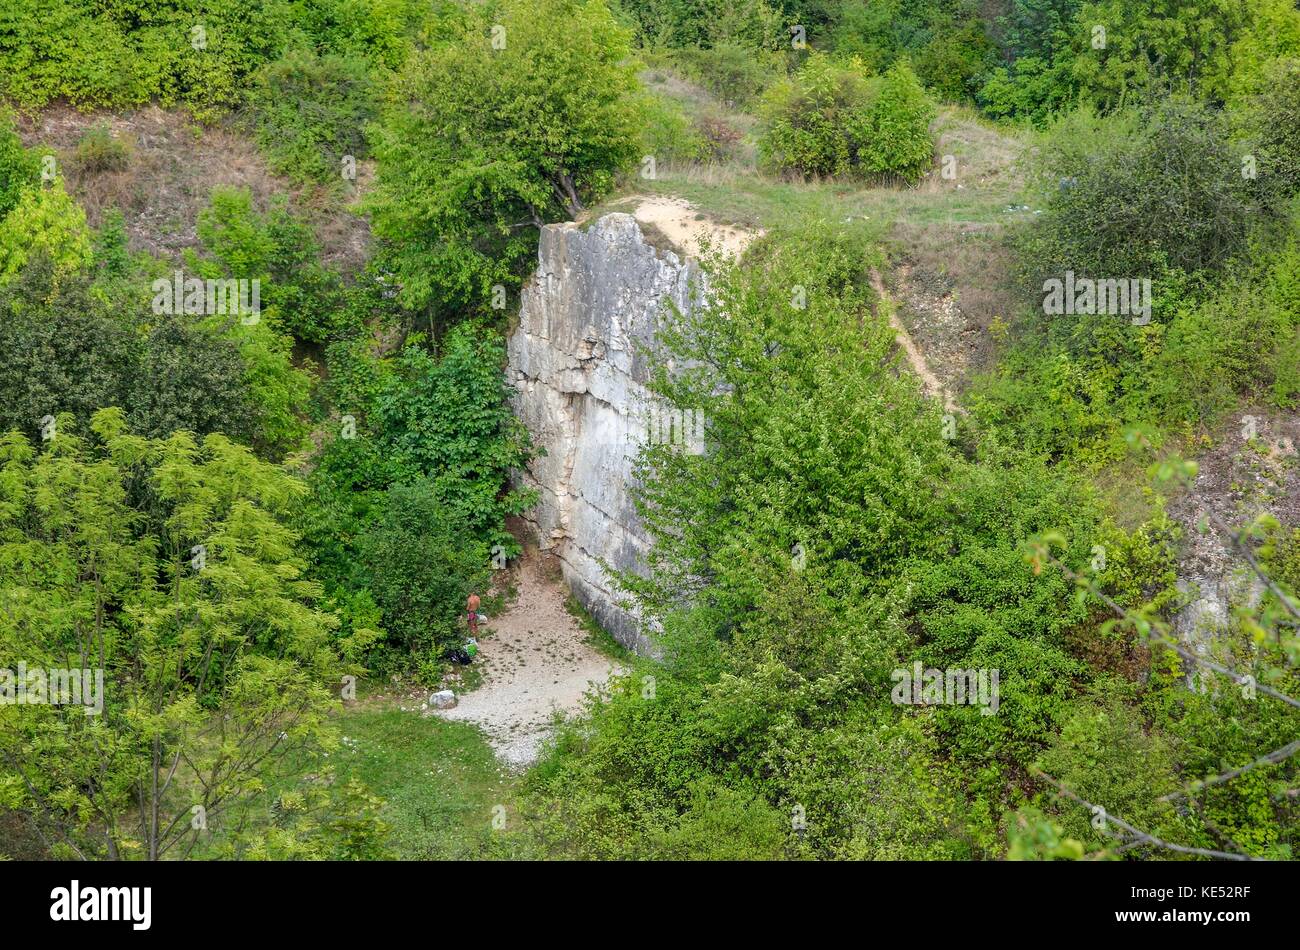 Felsen unter grünen Bäumen. Felsen von twardowski an der Lagune von zakrzowek in Krakau, Polen. Stockfoto